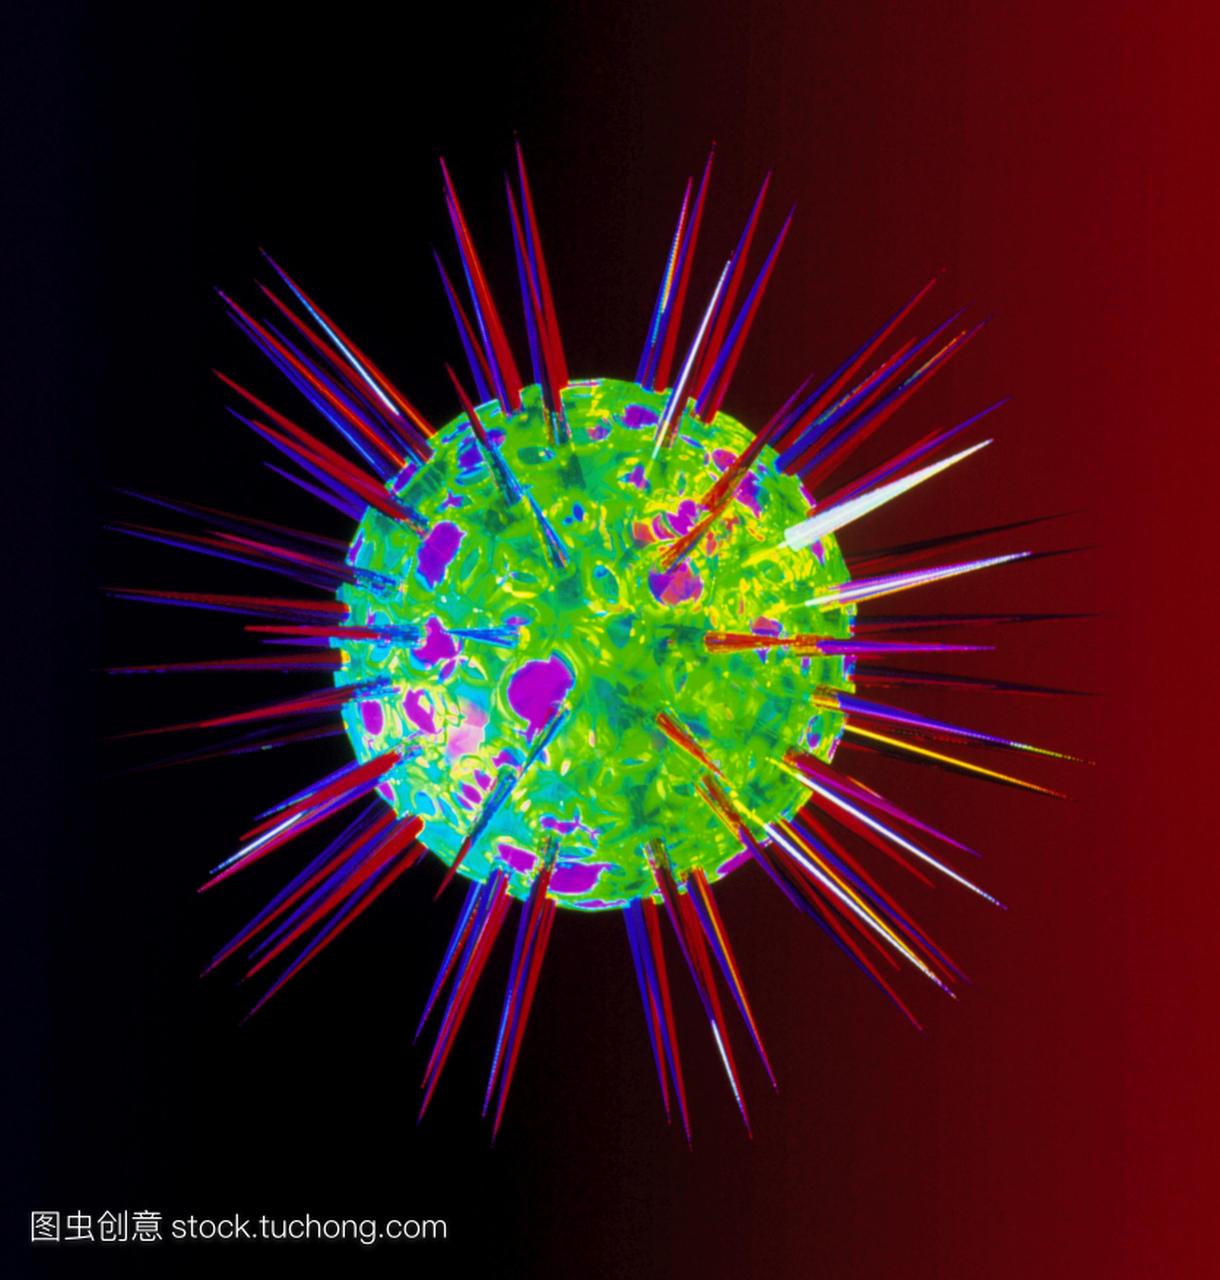 病毒传染性病原体的最小。他们造成的疾病从疣